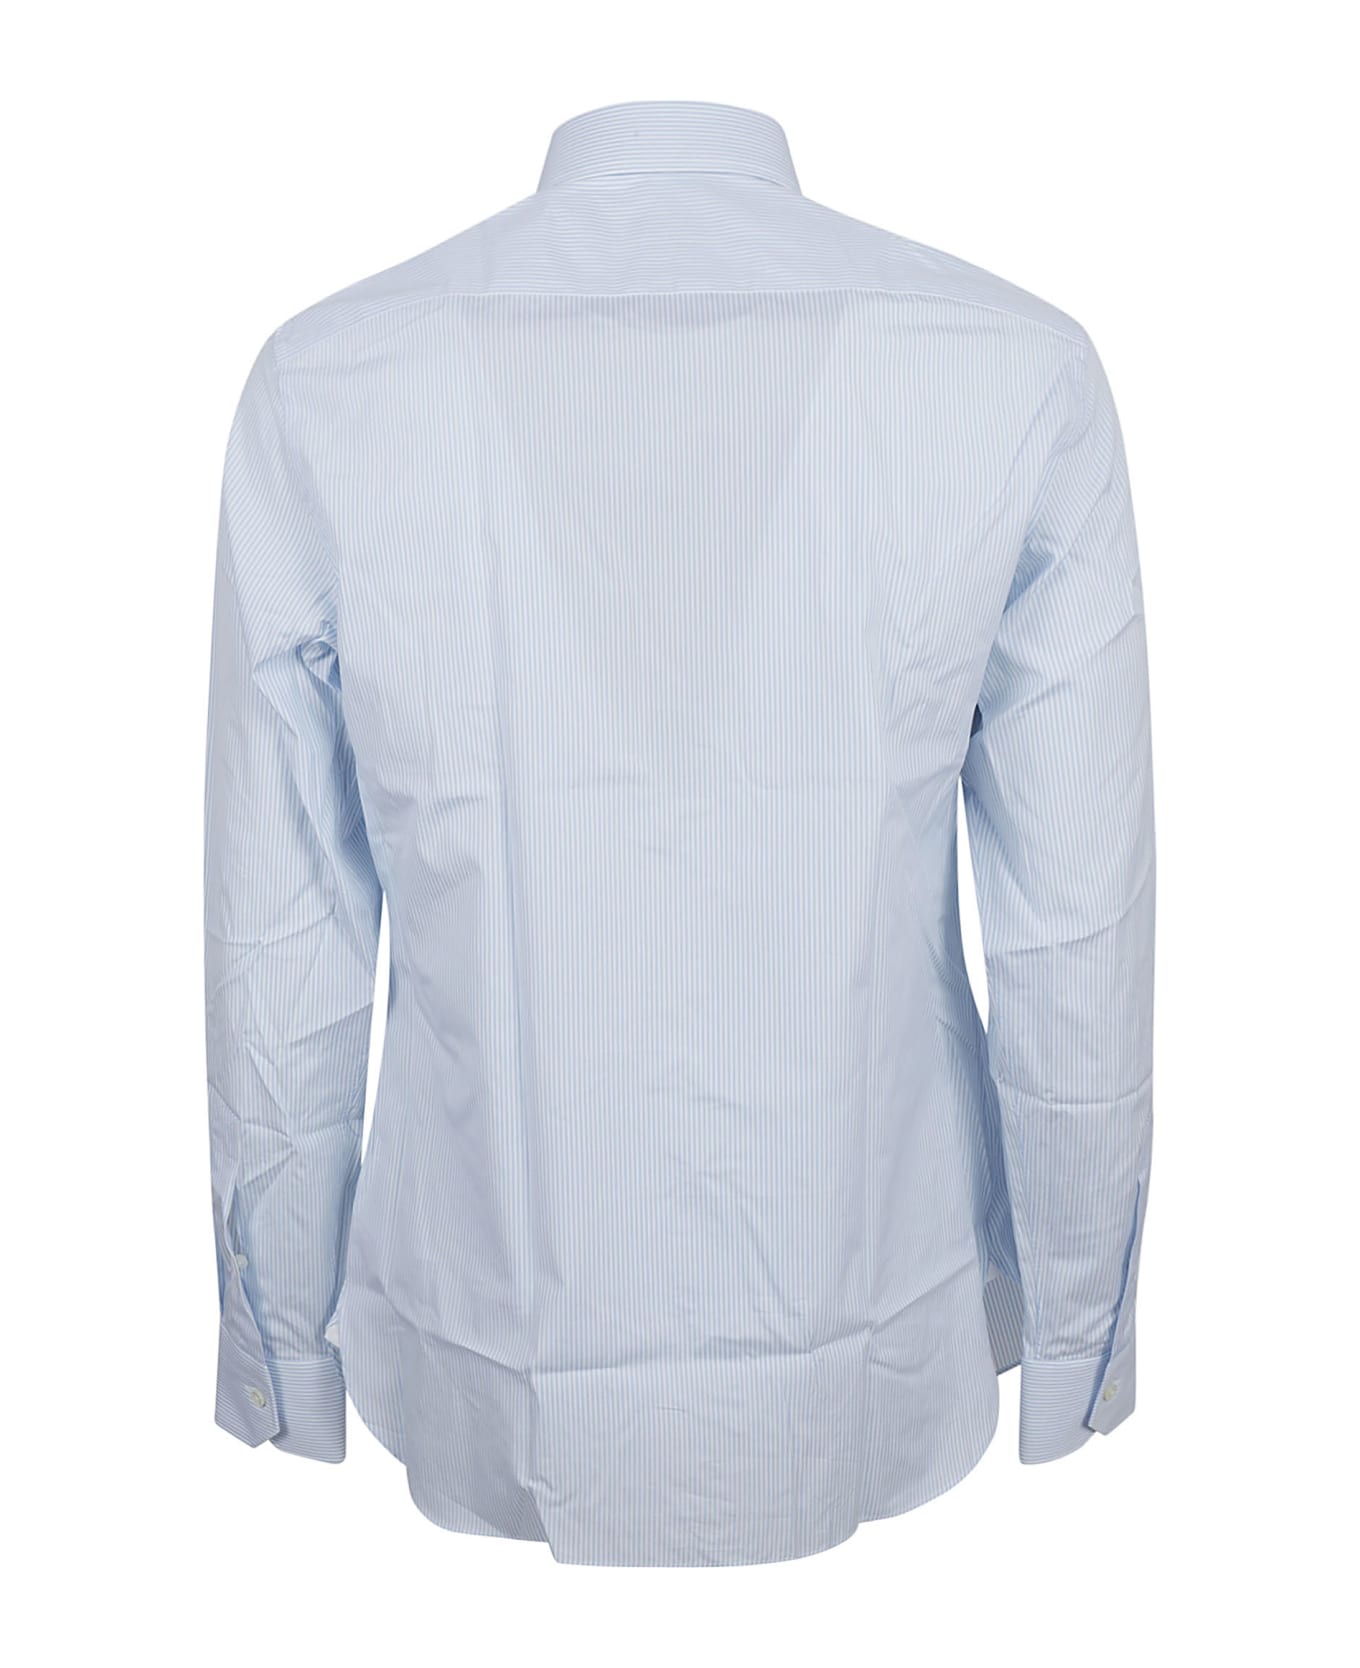 Zegna Long-sleeved Shirt - Blue